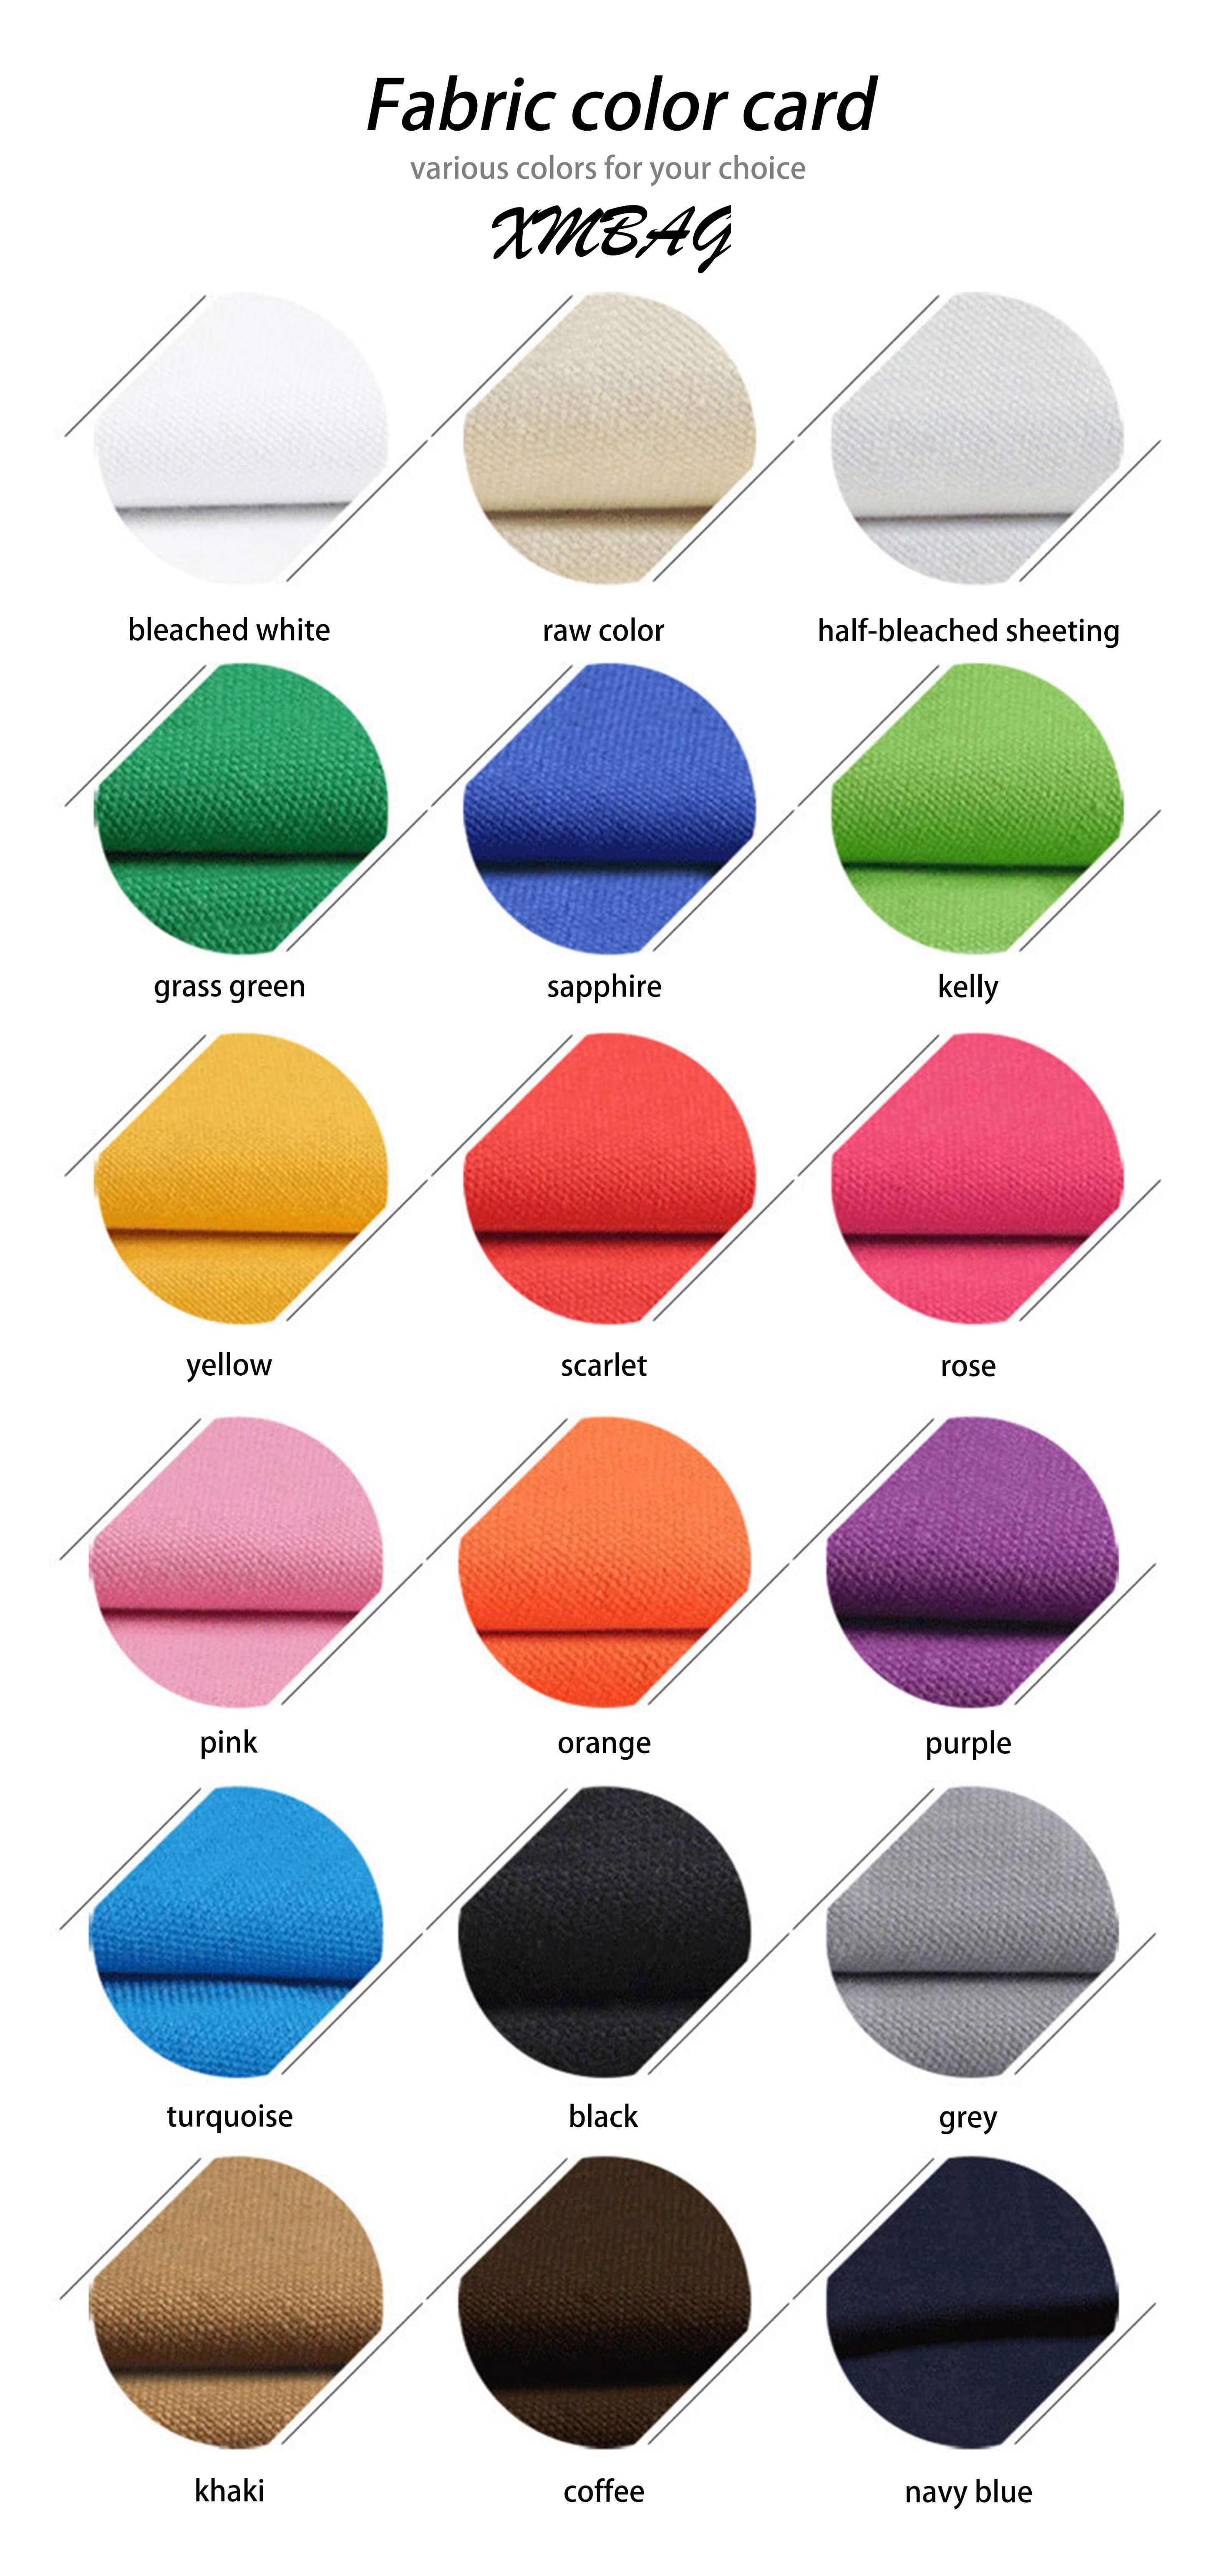 Farbkarte für Baumwolltaschen